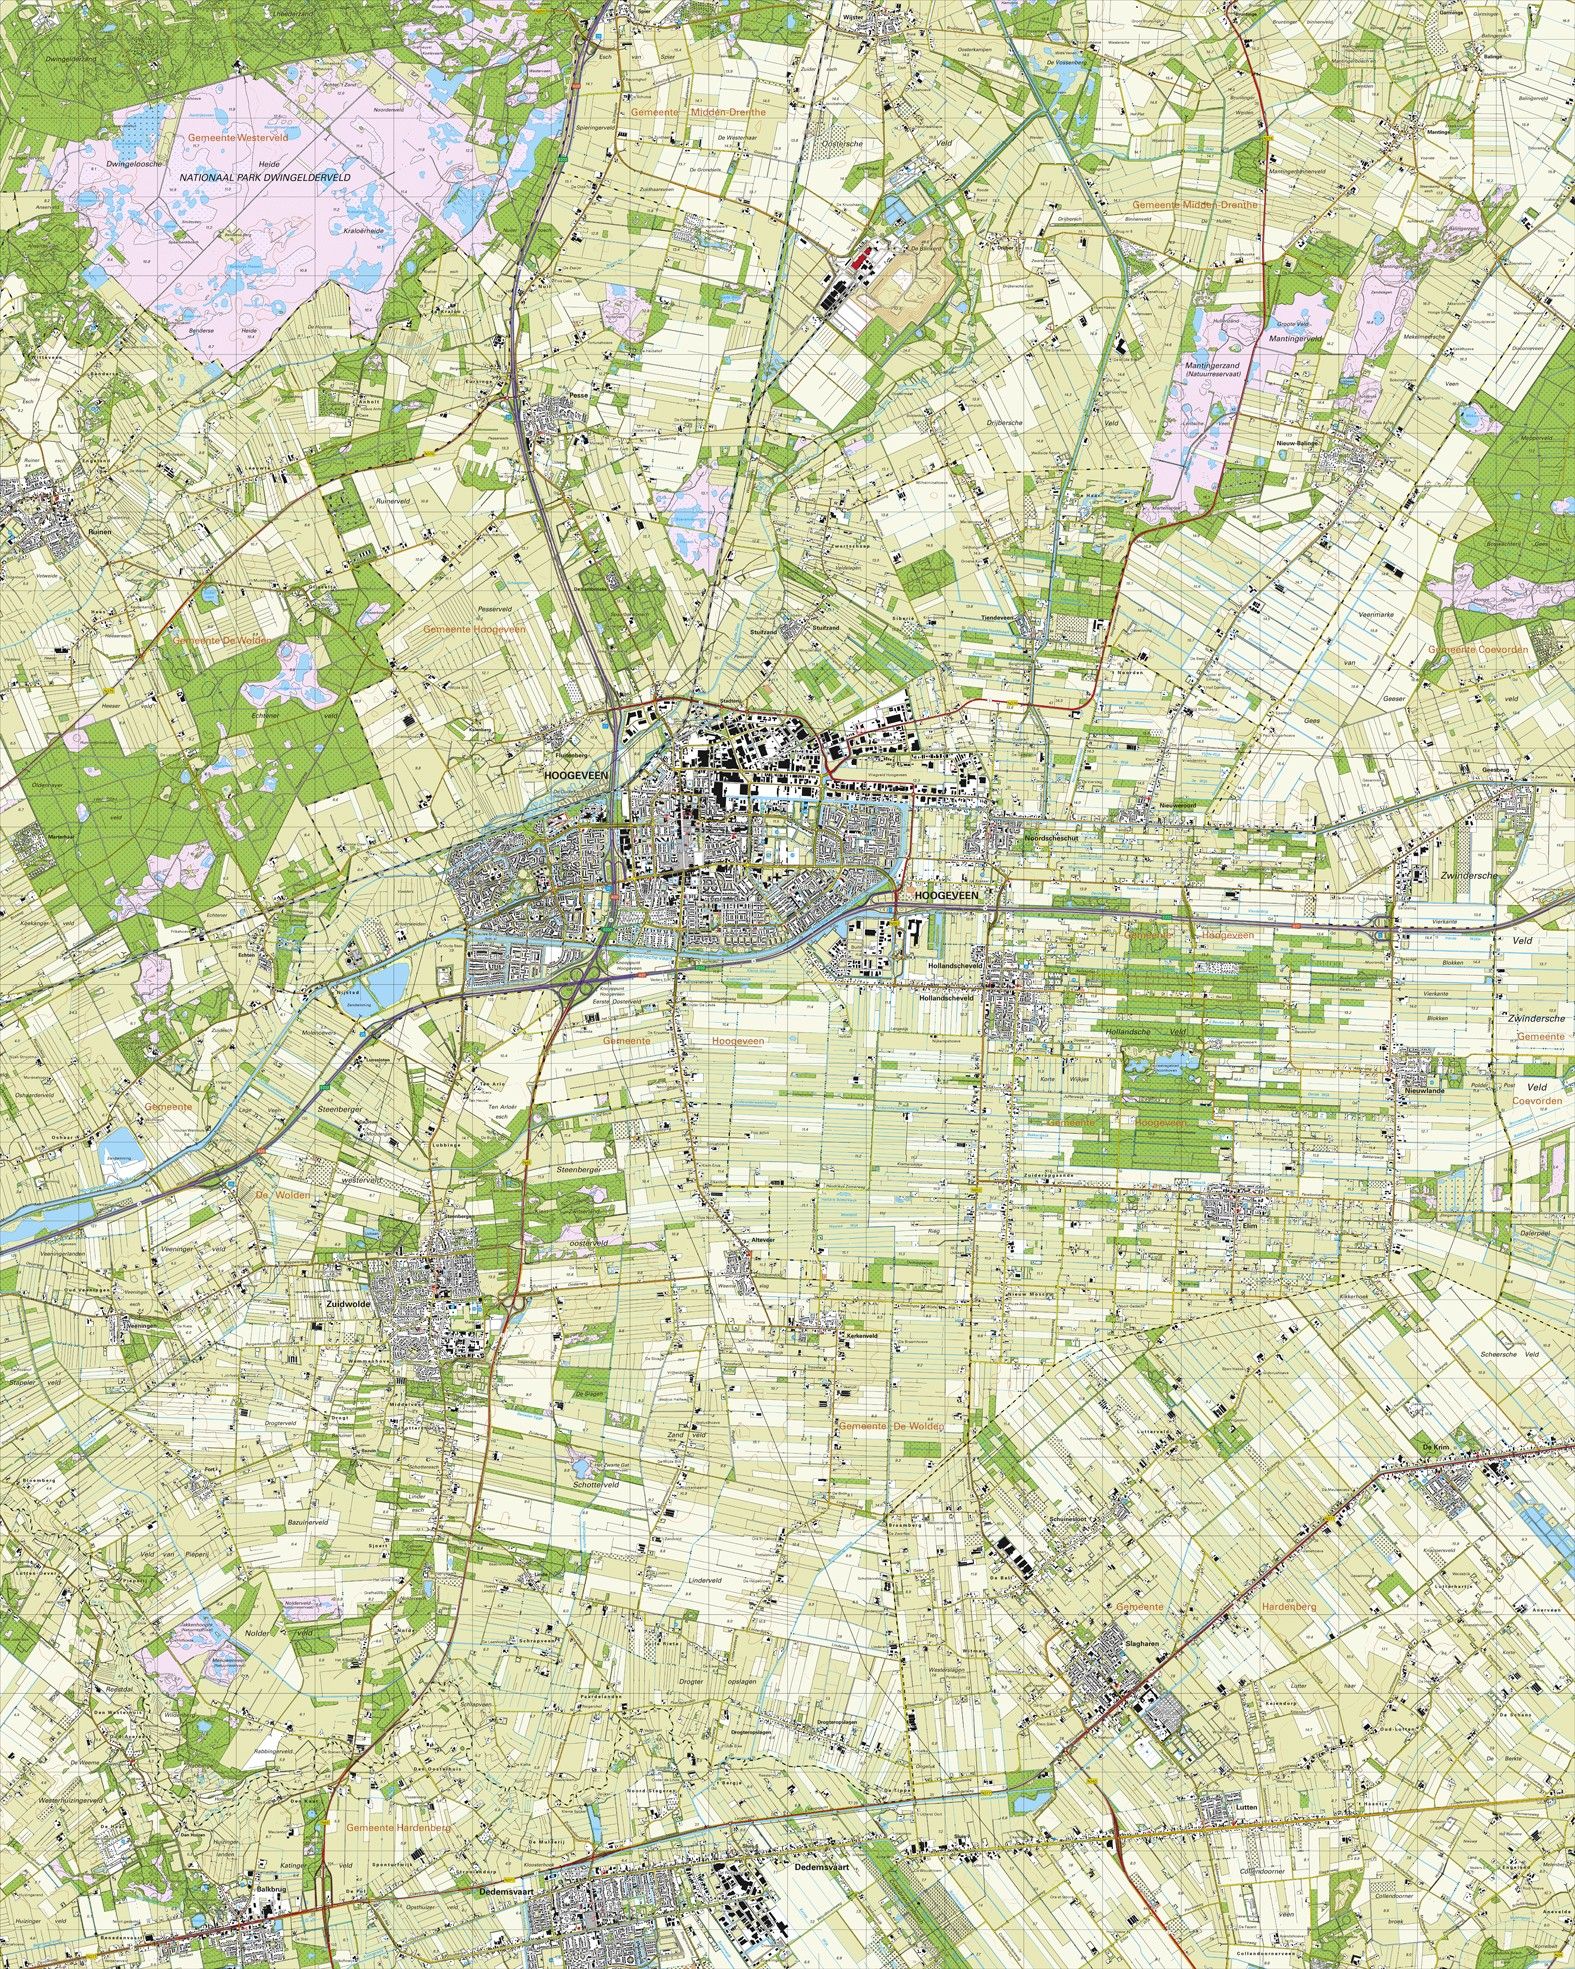 Topografische kaart schaal 1:25.000 (Hoogeveen, Zuidwolde, Dedemsvaart, Slagharen, de Krim)